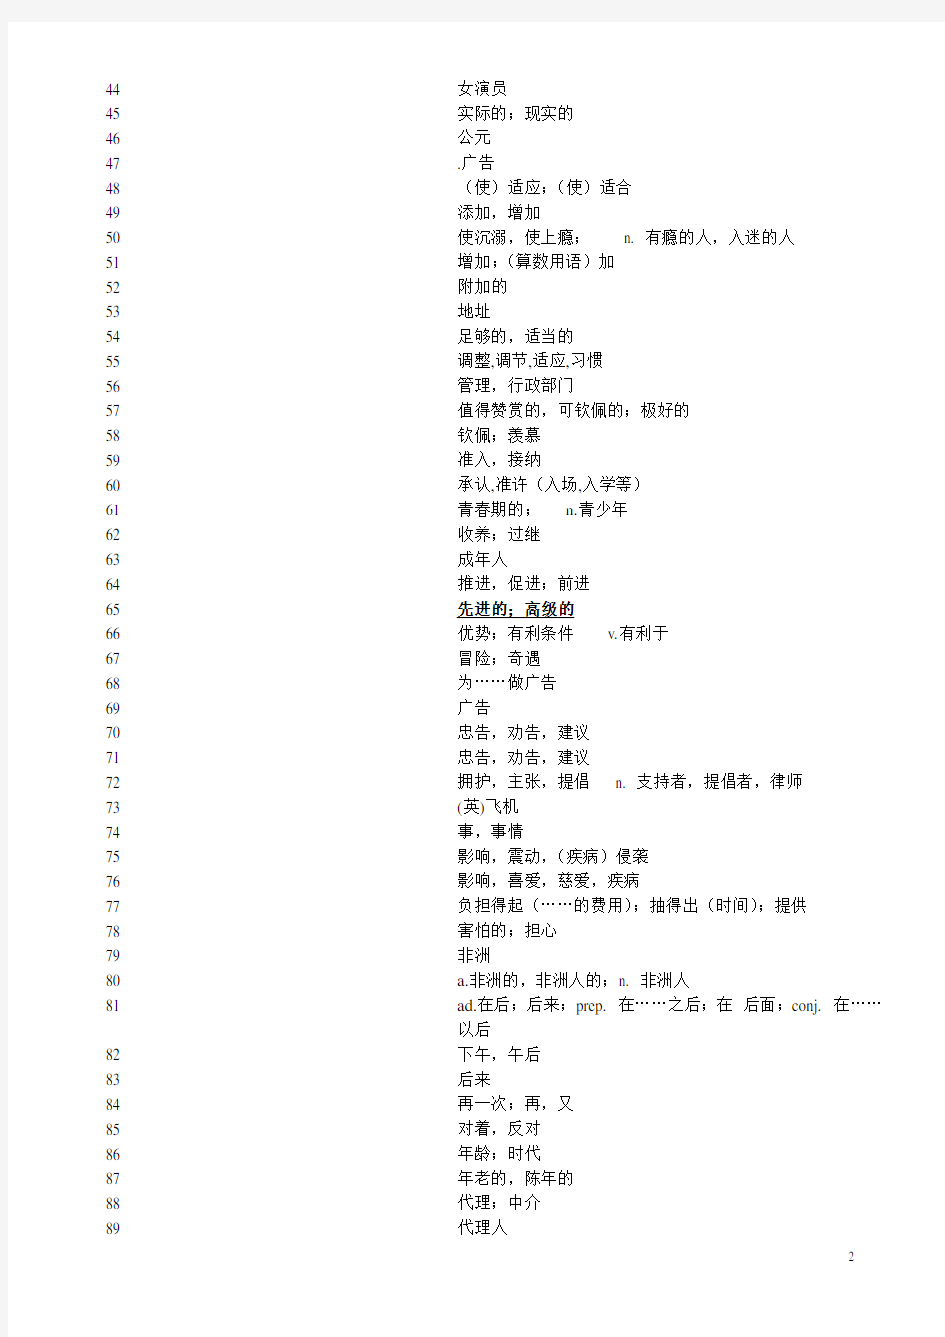 2018年上海高考英语考纲词汇表完整版-中译英(学生默写用)